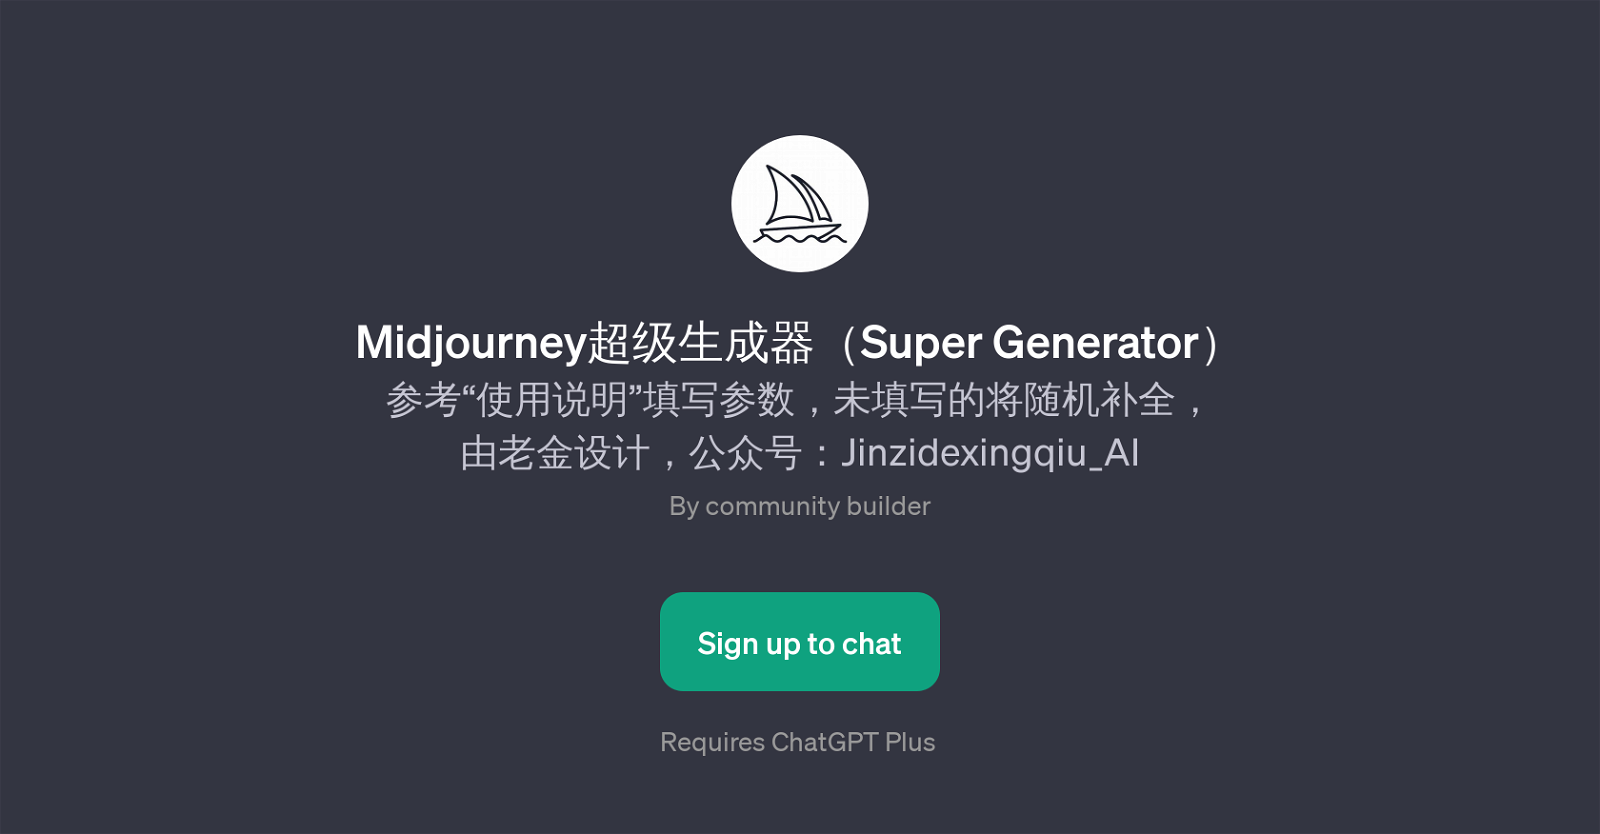 Midjourney Super Generator (Midjourney) website